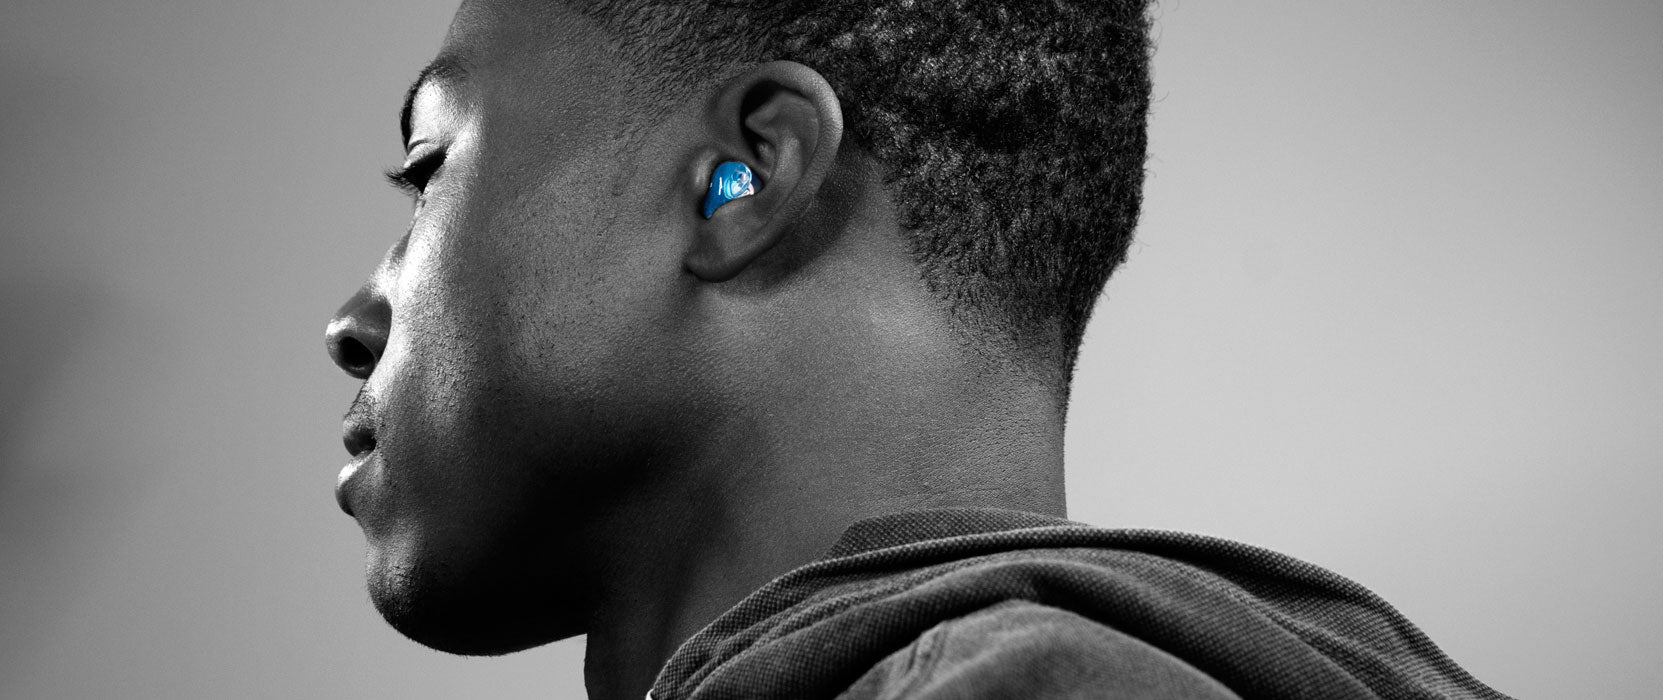 Man wearing blue custom molded earplugs